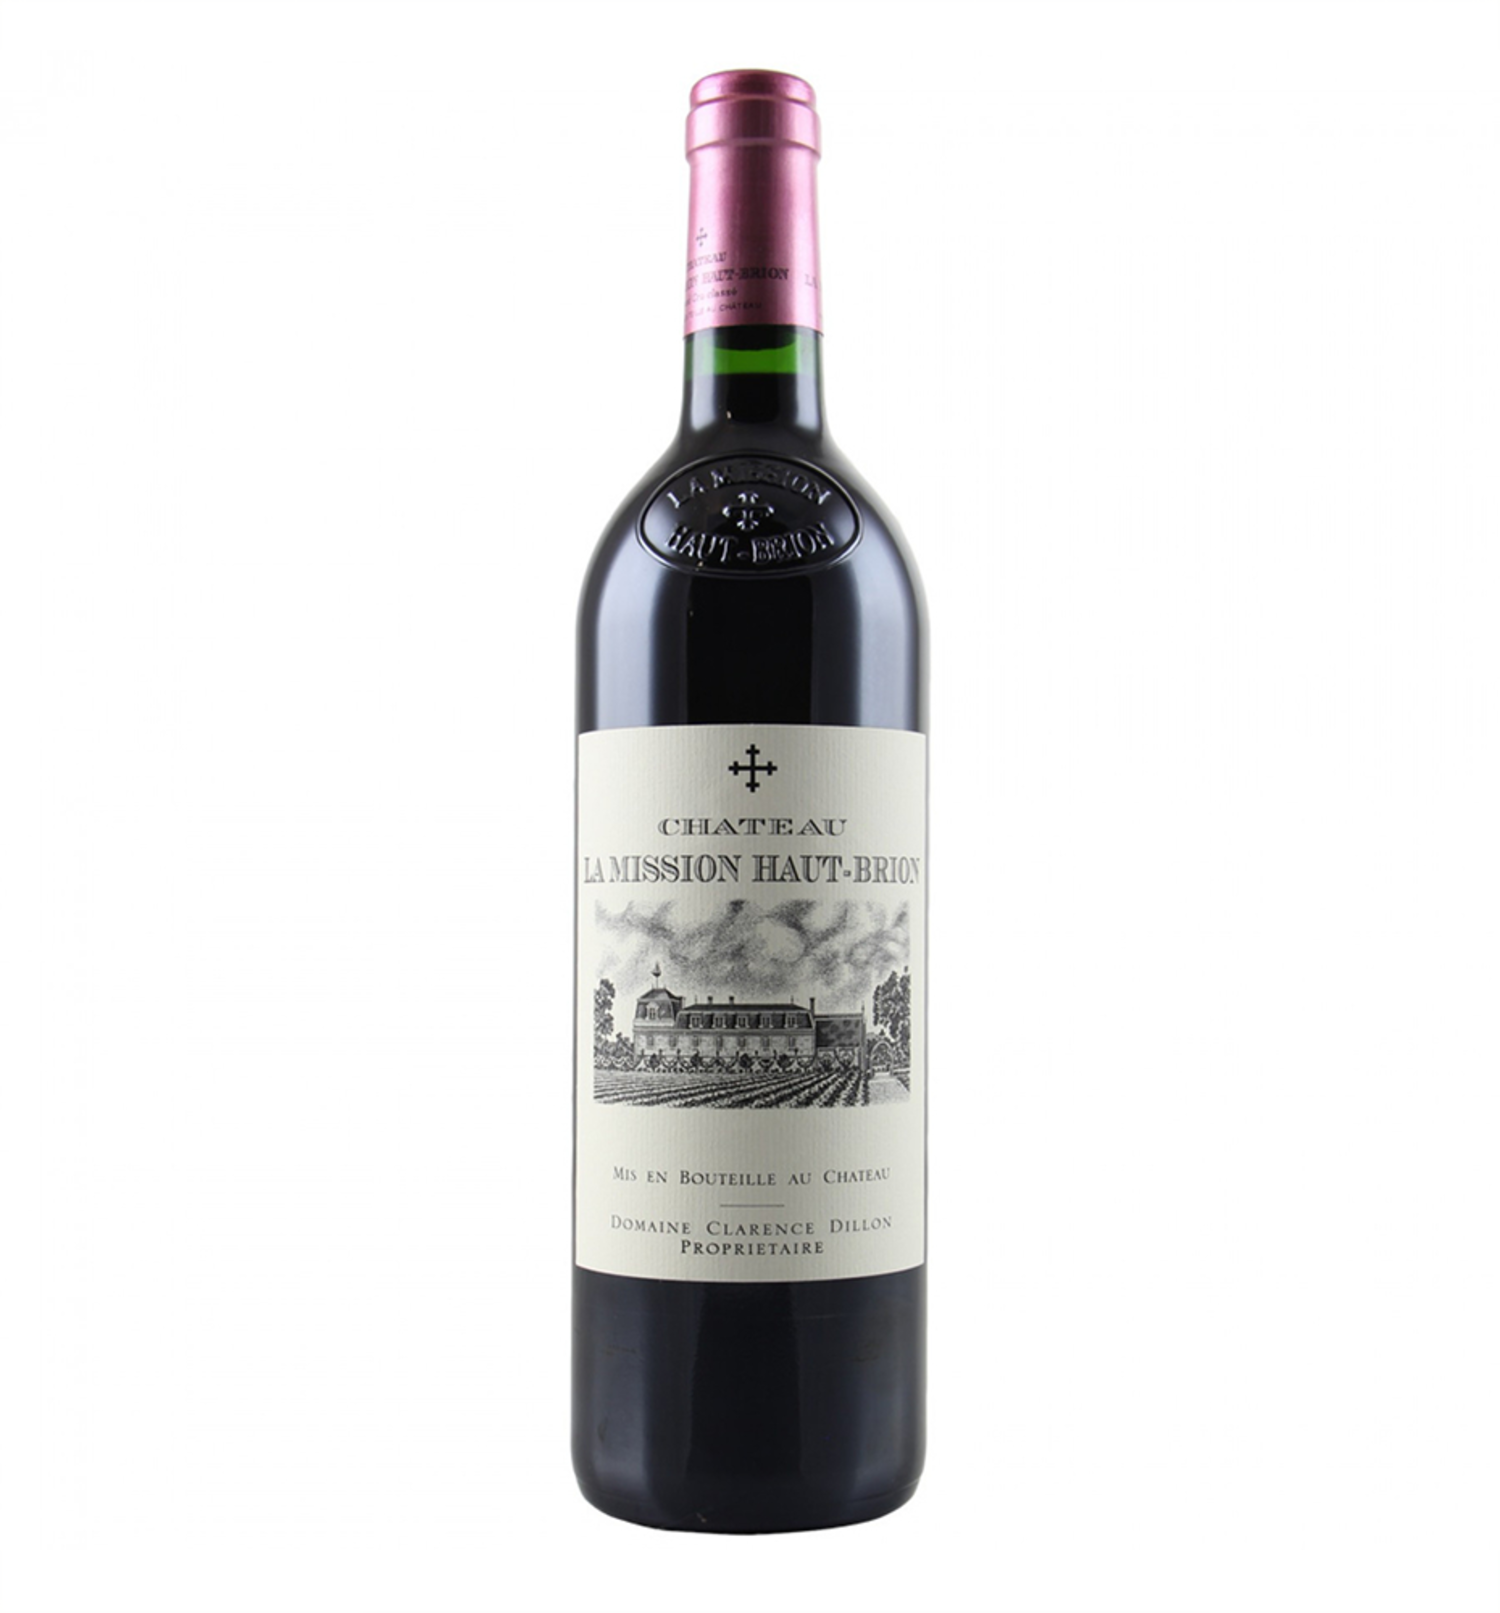 Chateau La Pessac-Leognan Bordeaux Wine&Spirits 2011 Red Uncle Blends 750ml - Haut-Brion Fossil Mission